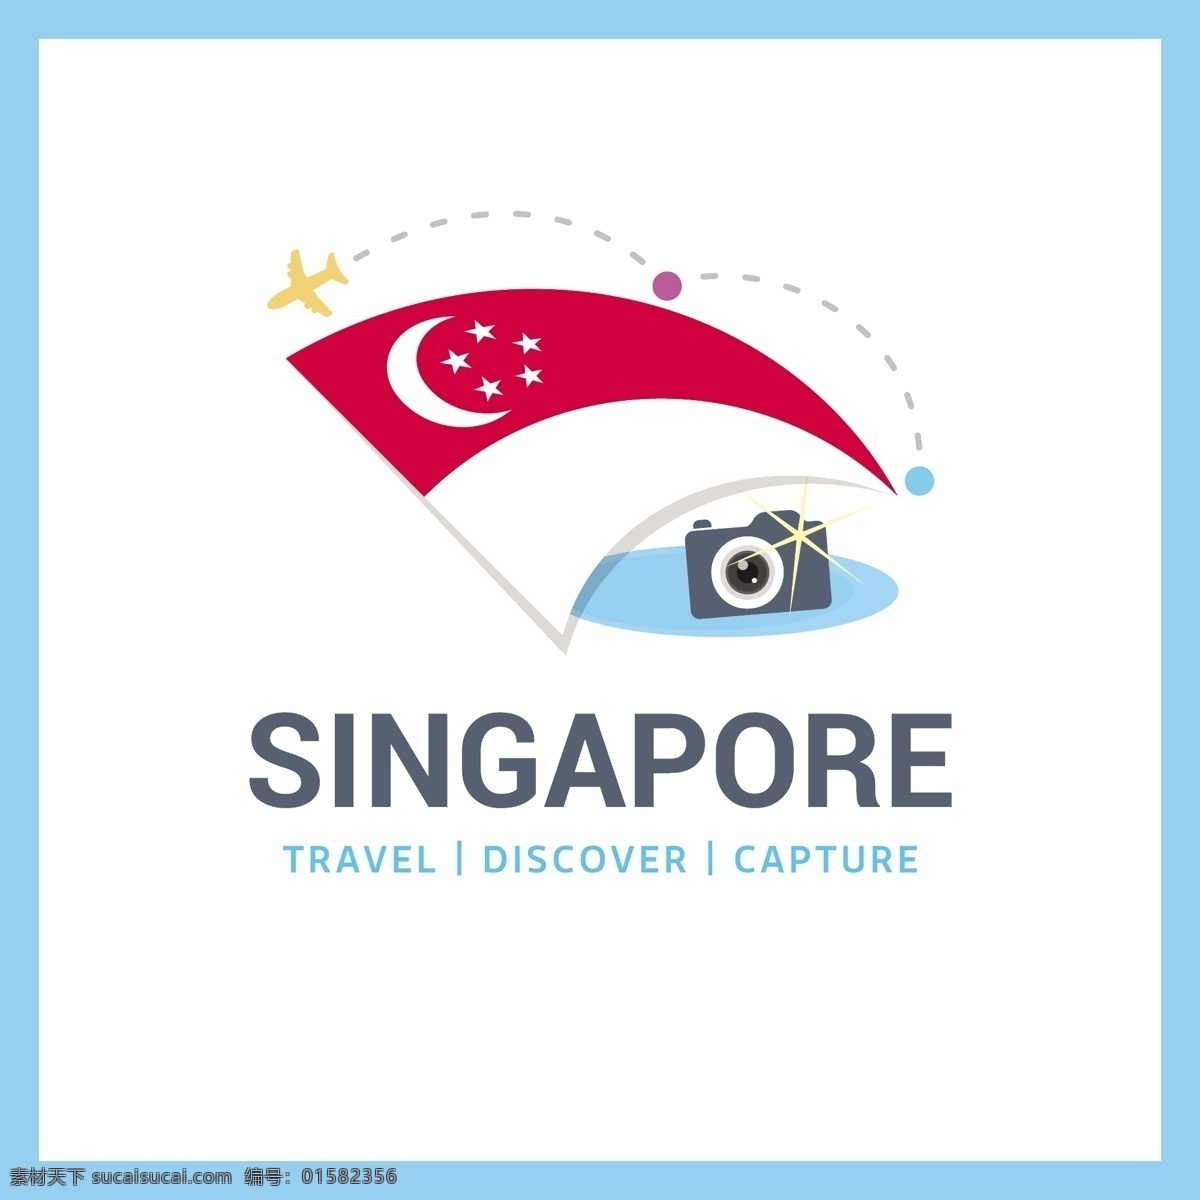 去新加坡旅行 背景 标志 标签 旅行 徽章 地图 世界国旗 国徽 旅游 度假 新加坡 假期